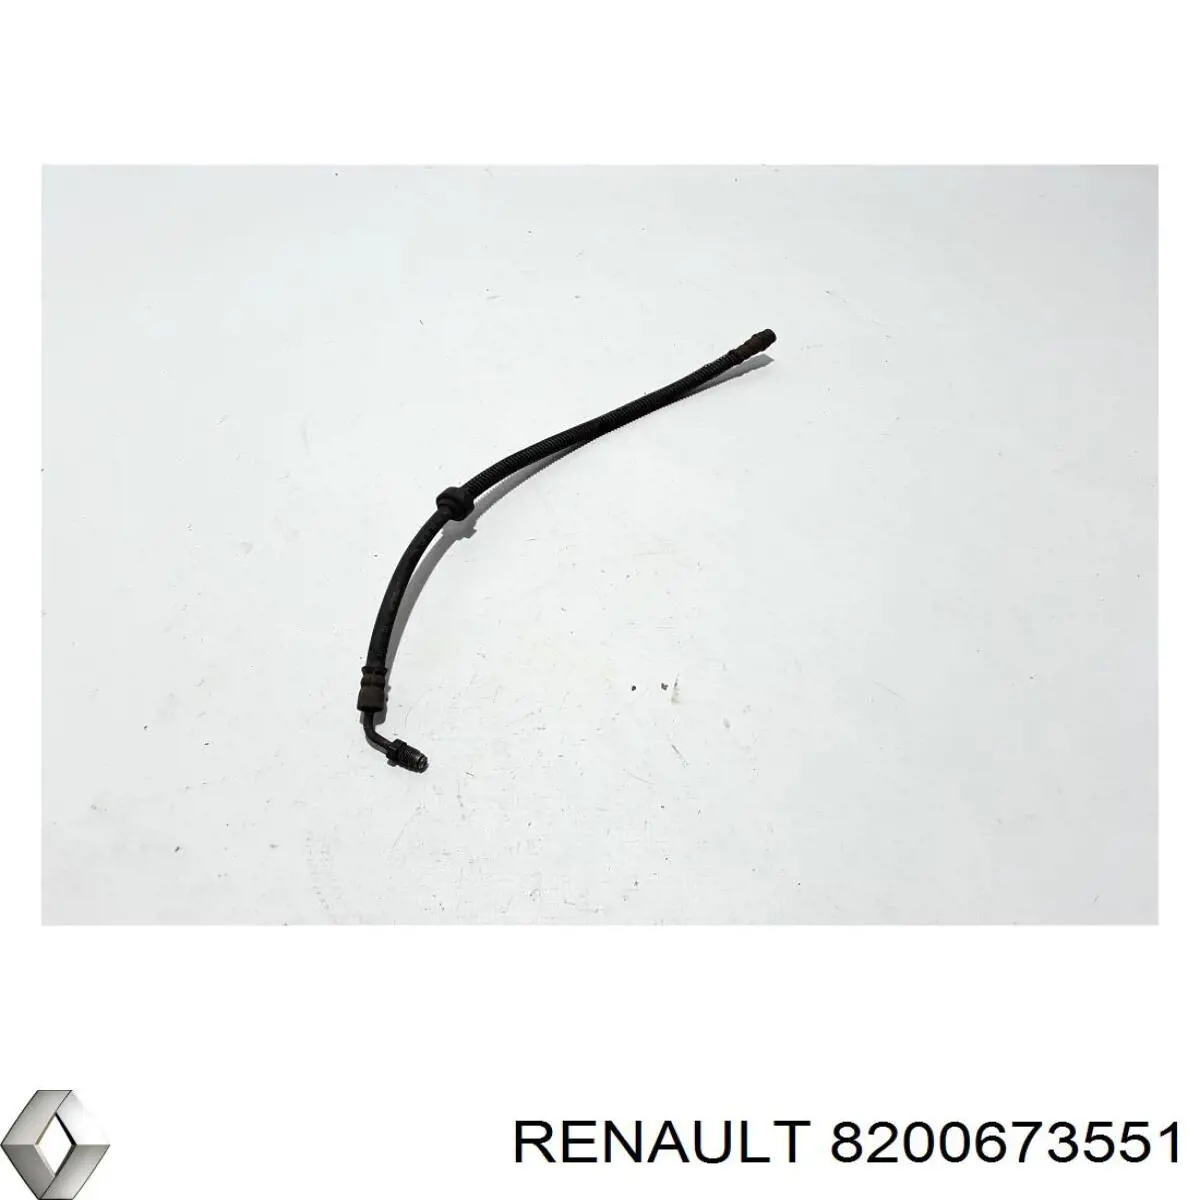 8200673551 Renault (RVI) latiguillo de freno delantero